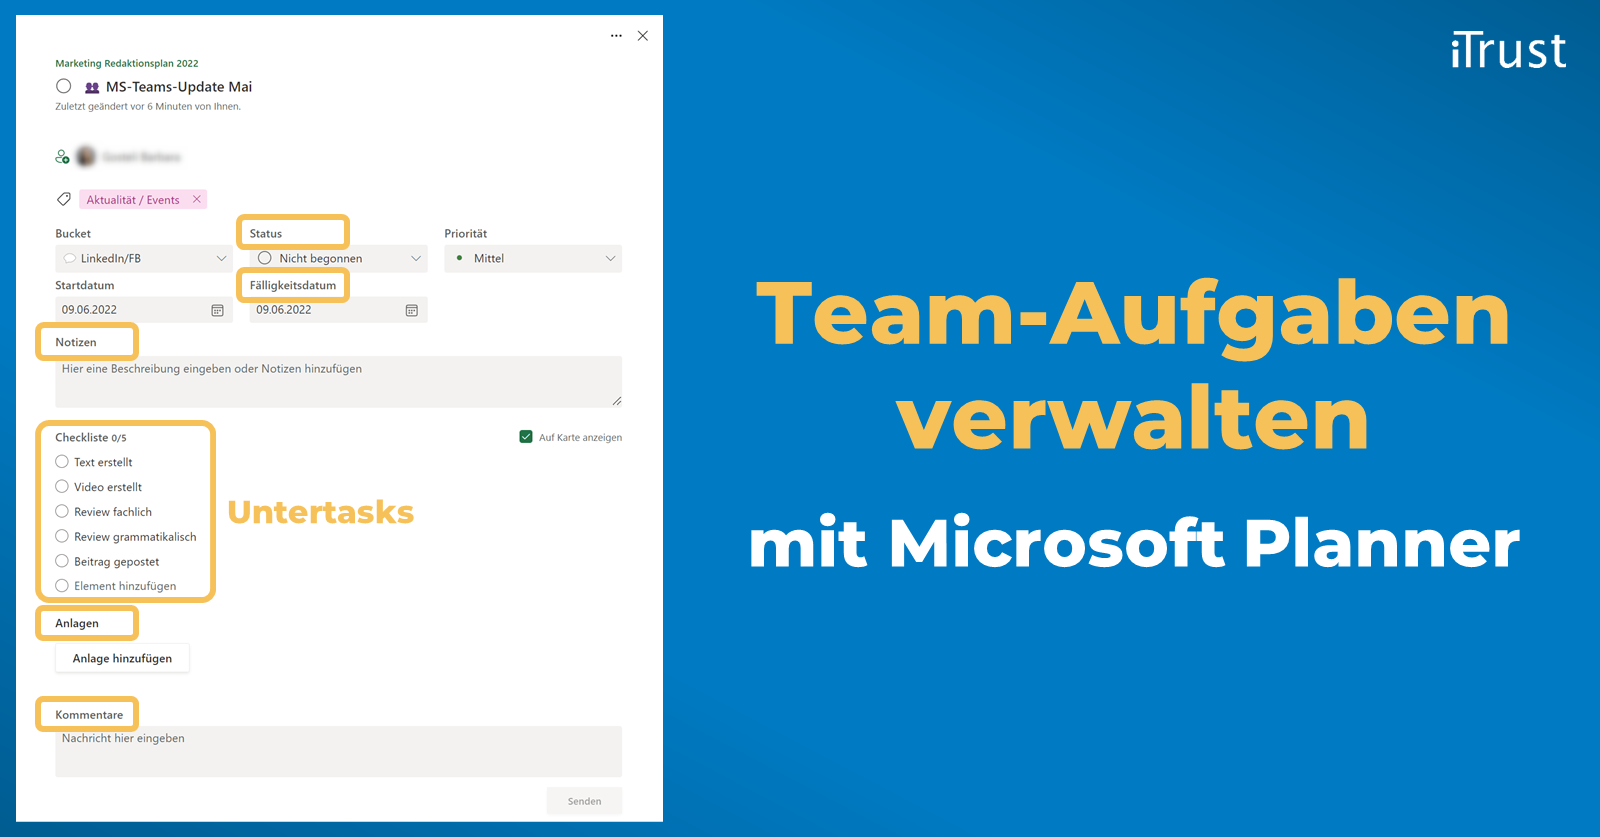 Team-Aufgaben verwalten mit Microsoft Planner